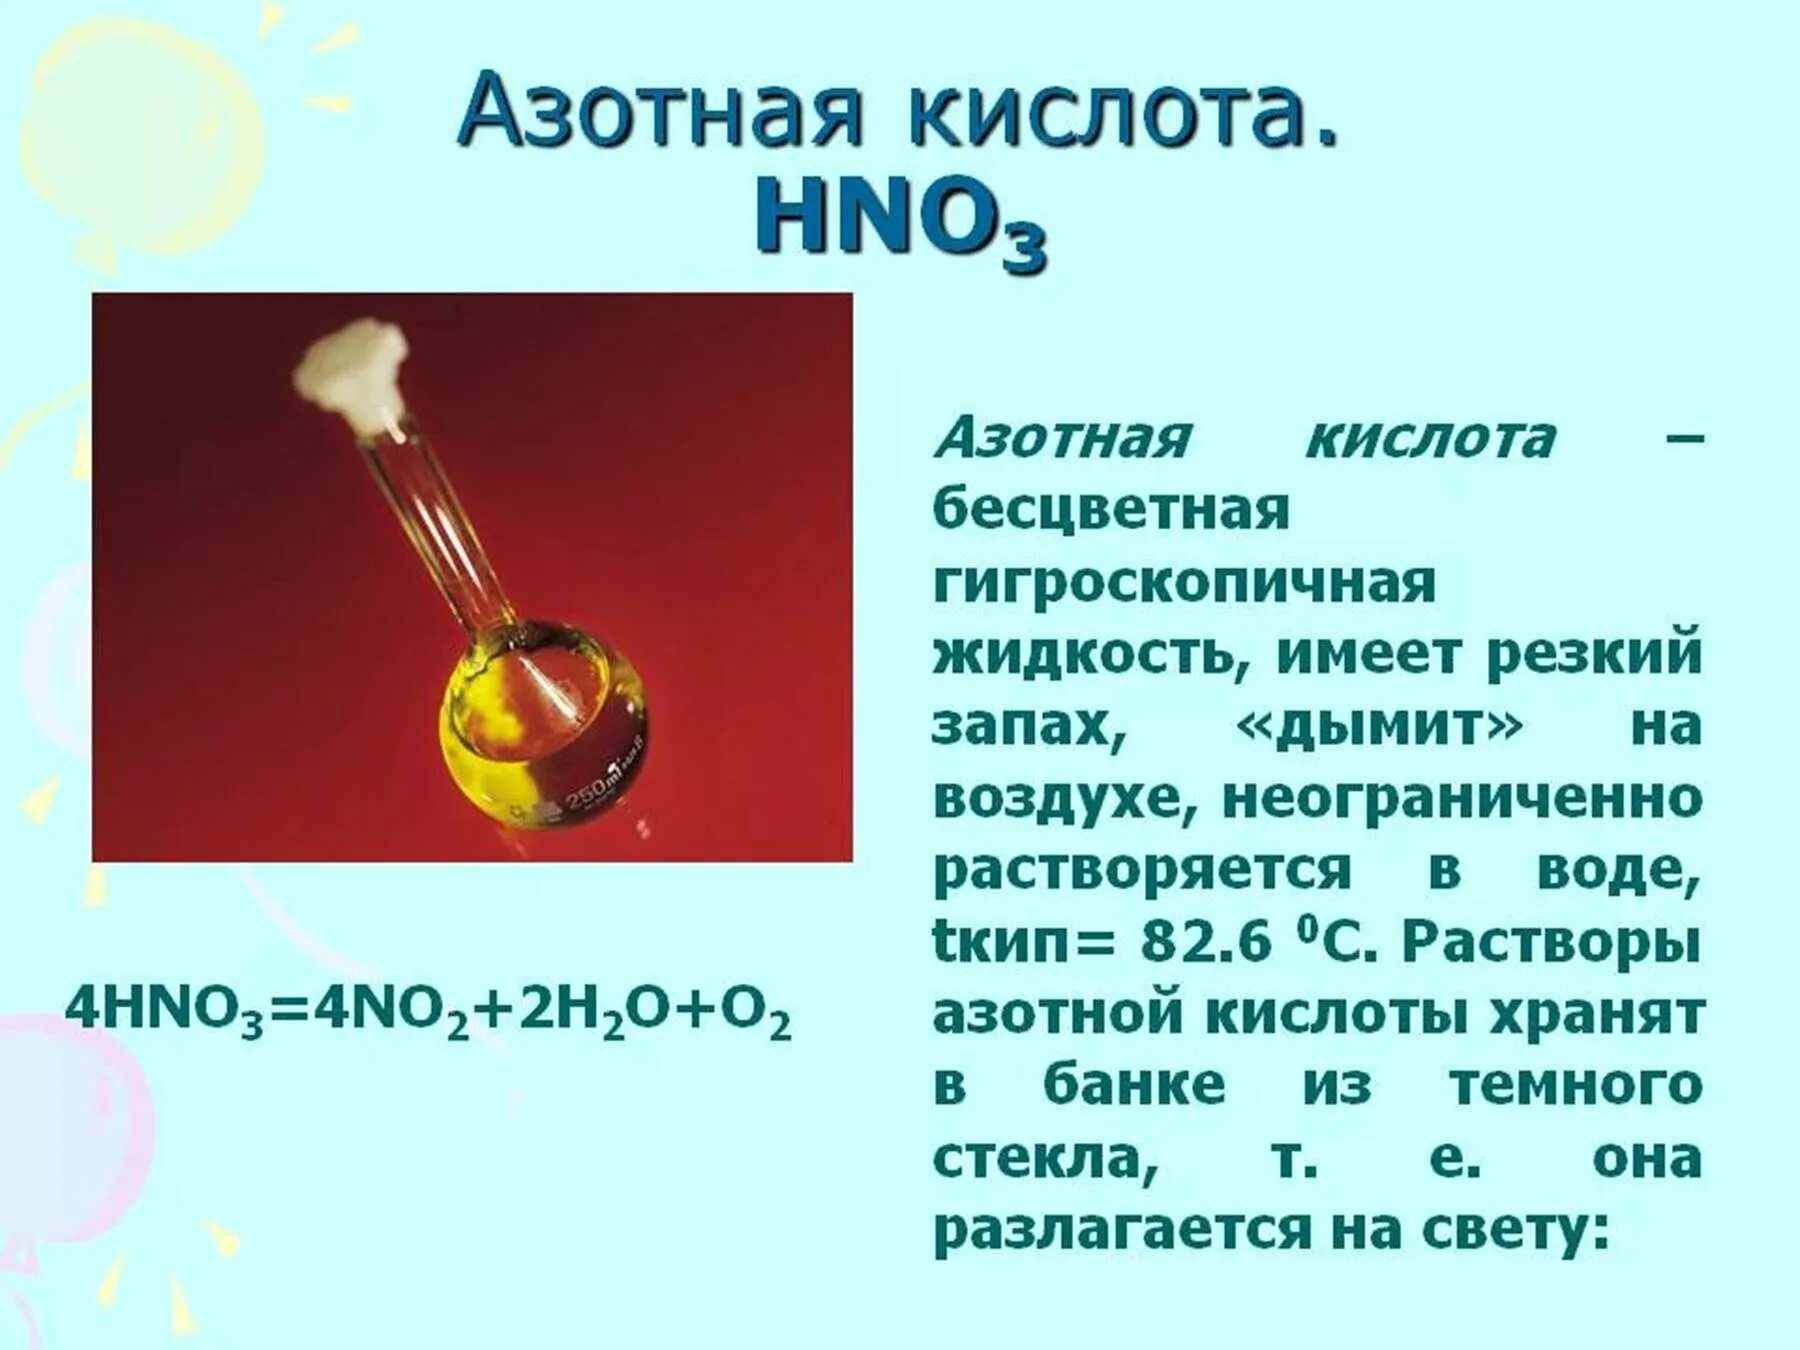 Азотная кислота одноосновная. Азотная кислота hno3. Азотная кислота обладает резким запахом. Слайд азотная кислота. Раствор азотной кислоты.